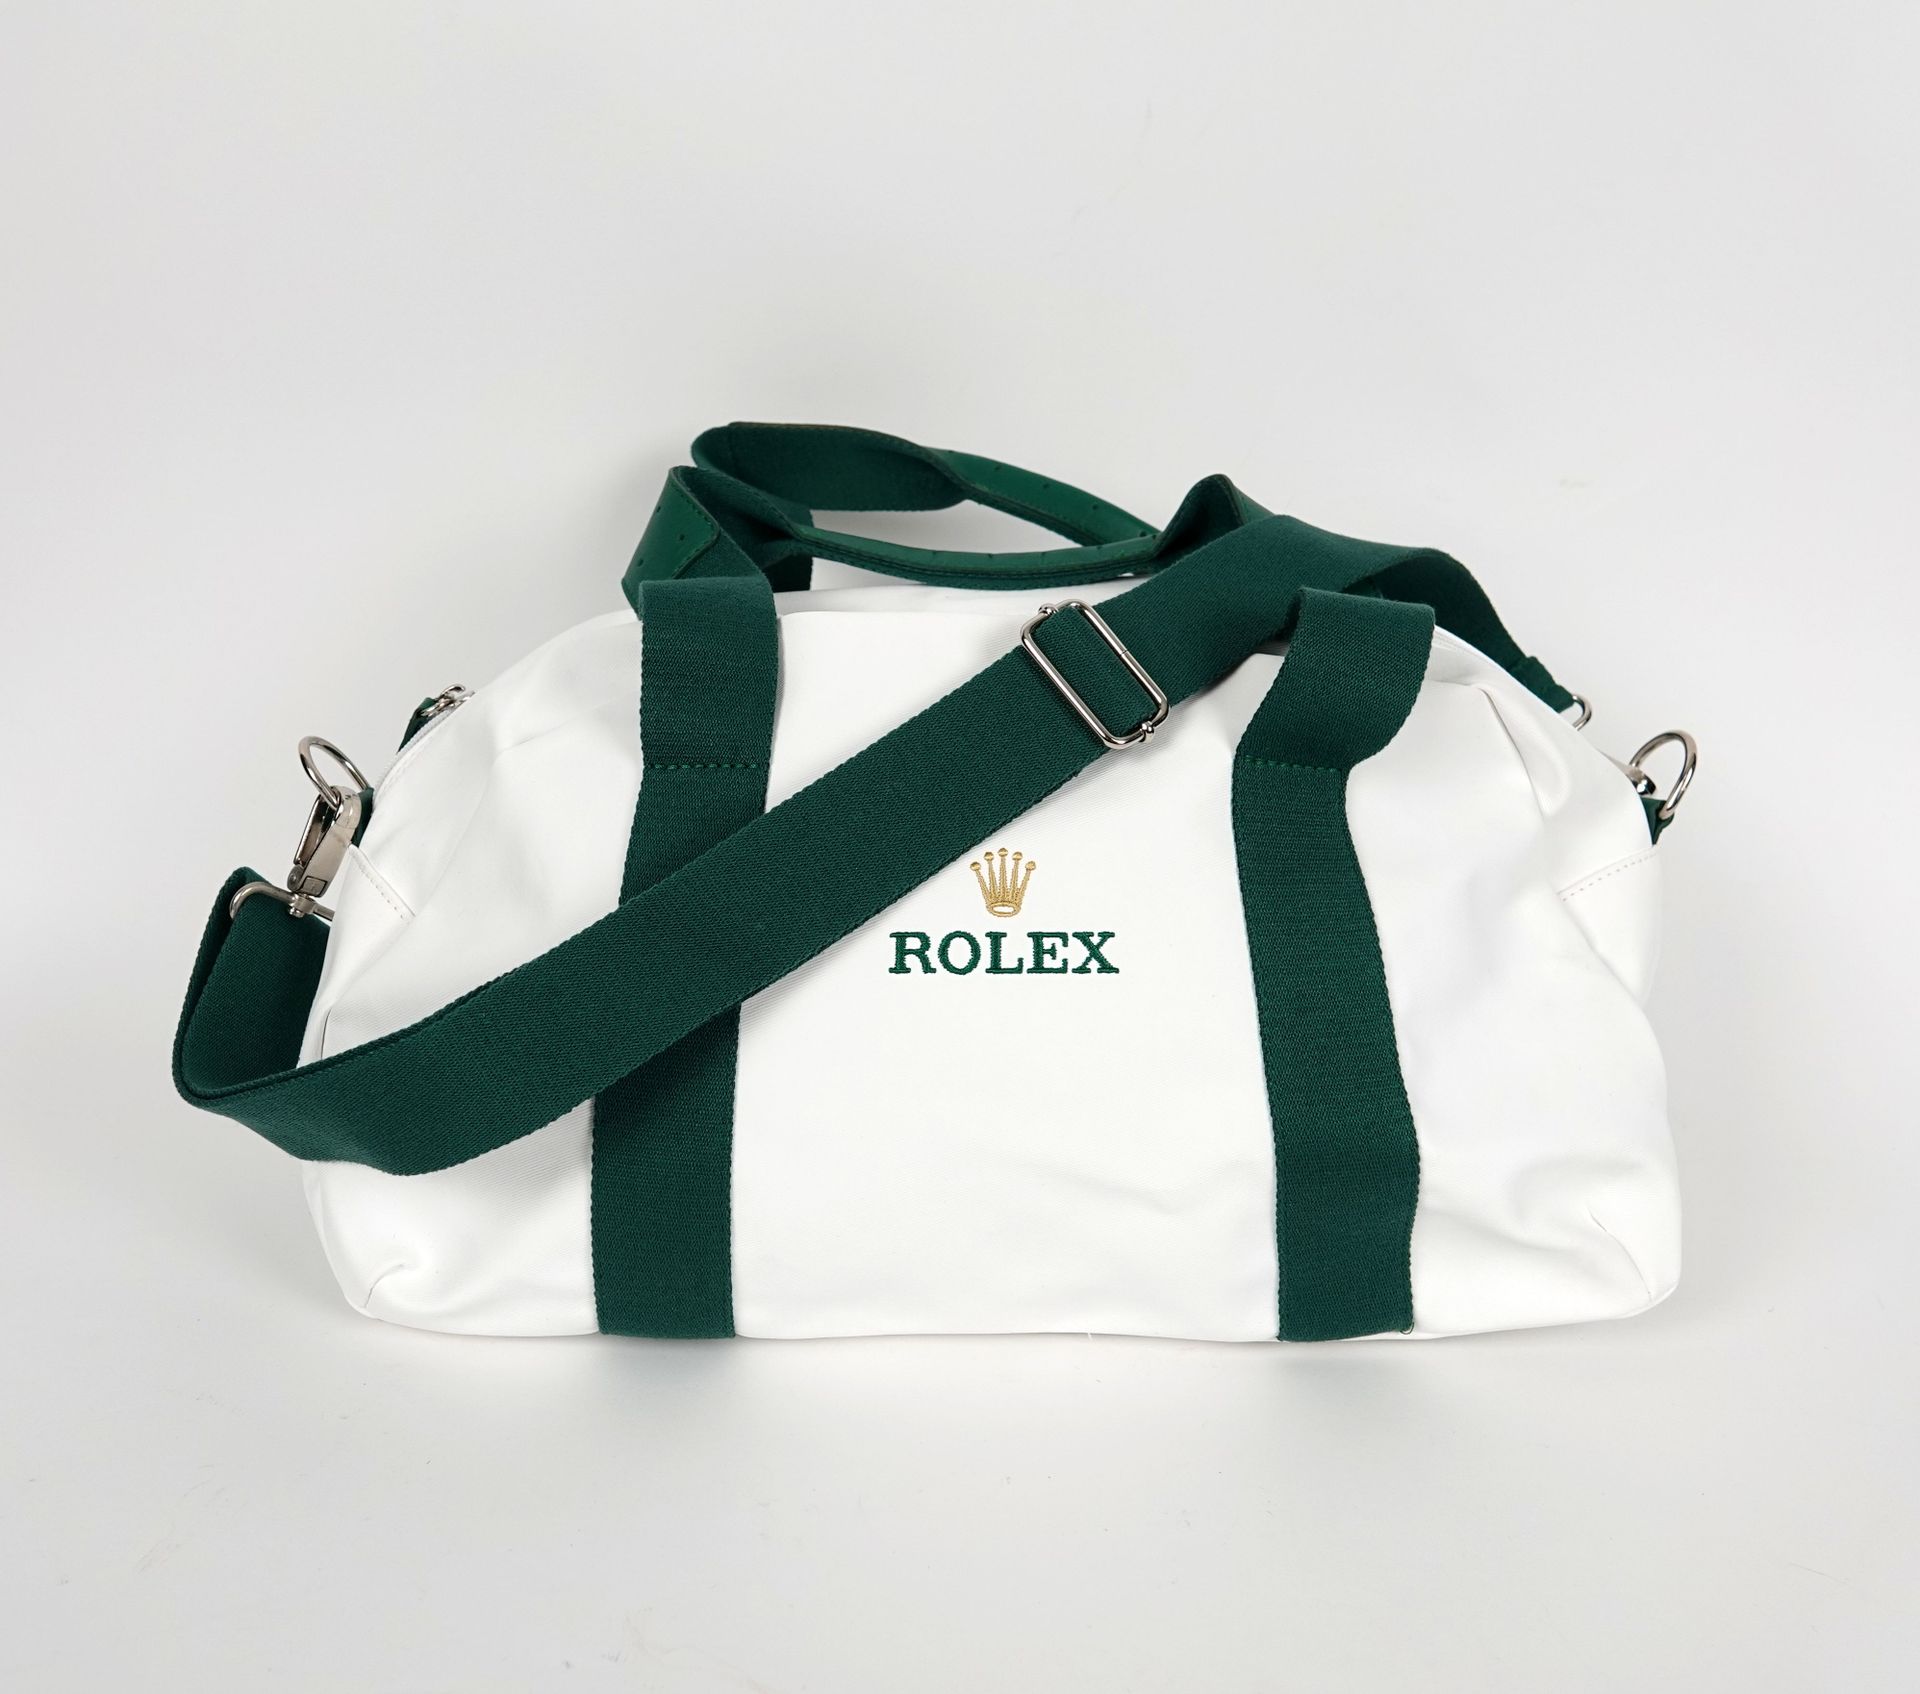 Null Rolex
Una bolsa de deporte de tela blanca y piel verde de Rolex.